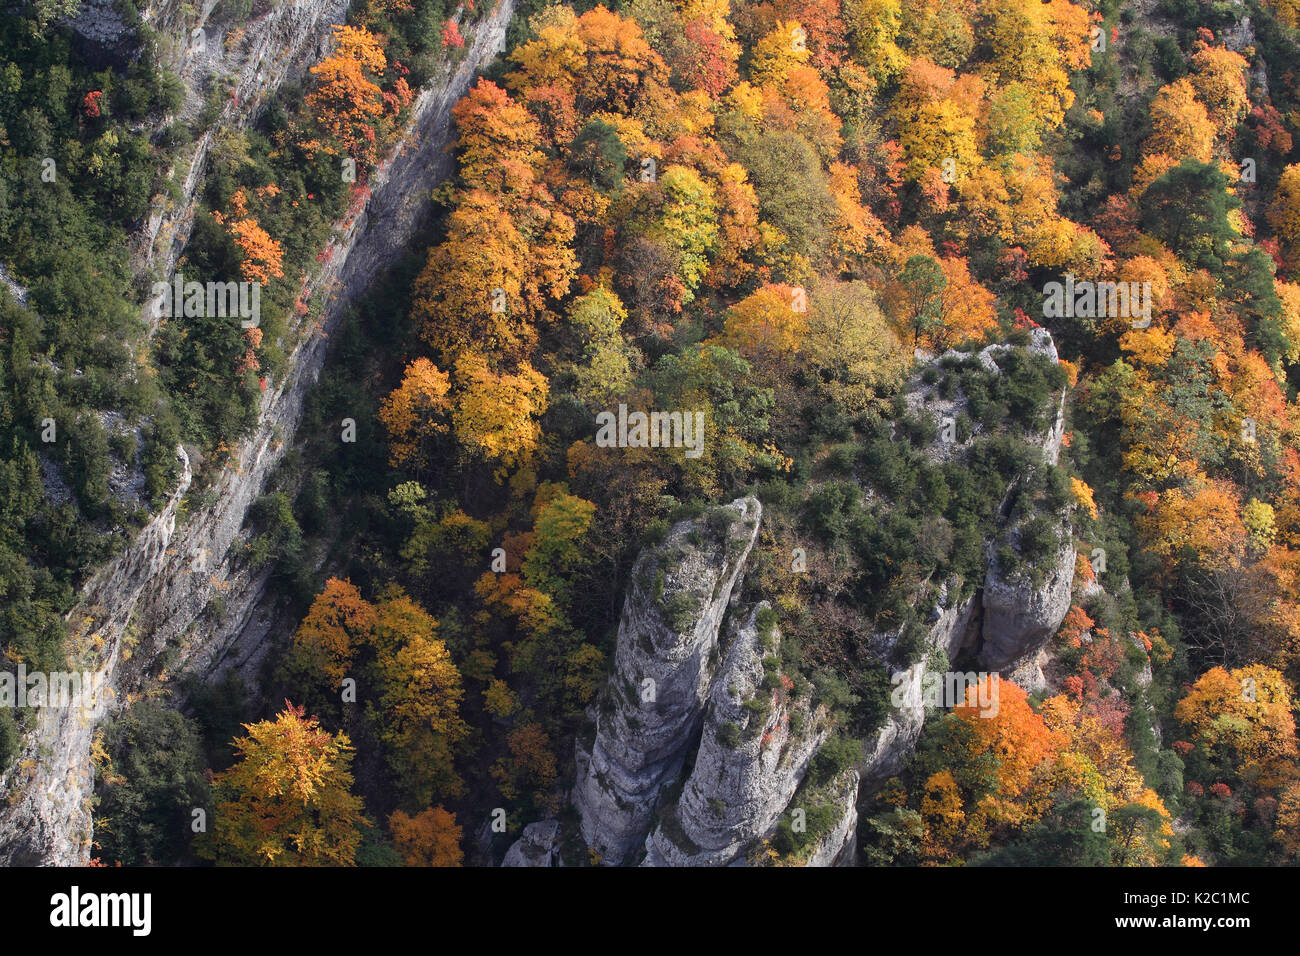 Blick in die Schlucht des Verdon/Gorges du Verdon, mit Bäume im Herbst, Verdon Natural Regional Park, Alpes de Haute Provence, Provence, Frankreich, Oktober 2011. Stockfoto